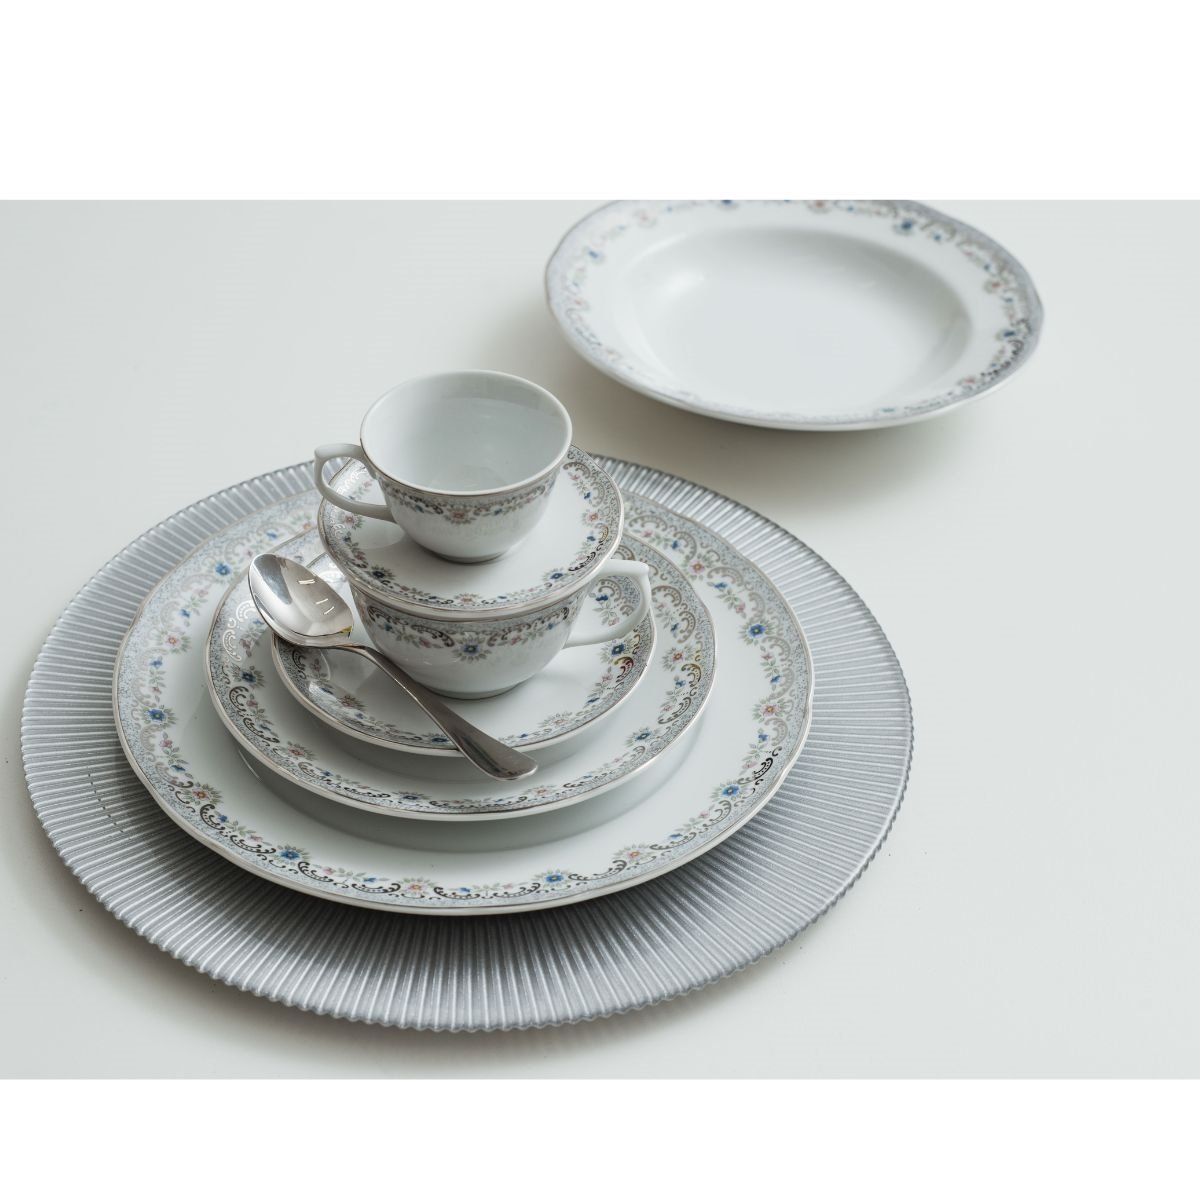 Aparelho de Chá e Café Porcelana Schmidt 53 peças - Dec. Cebolinha 2617 -  SCHMIDT